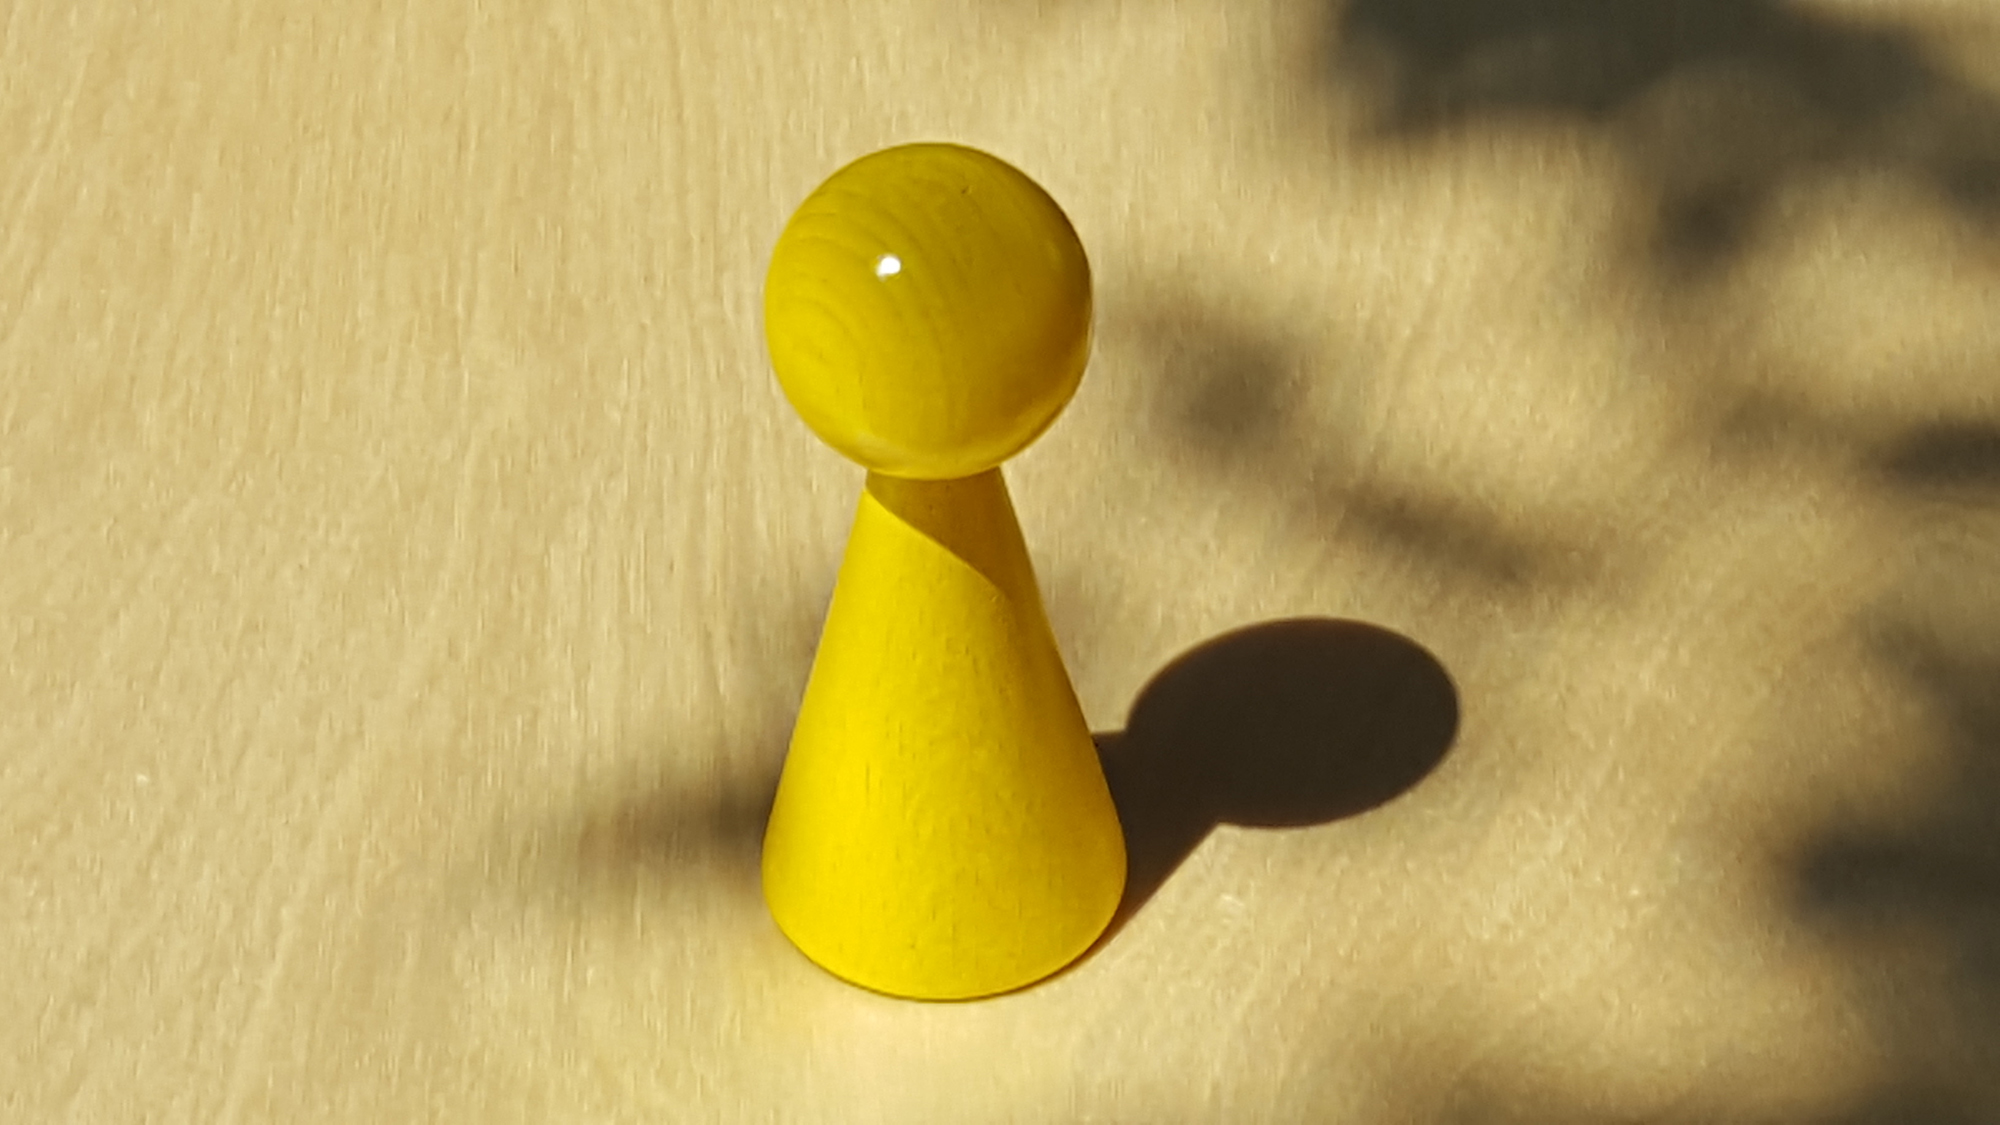 www.systembrett.at · Systembrett-Artikel · Einzel-Figur 10 cm in gelb (ohne Augen);